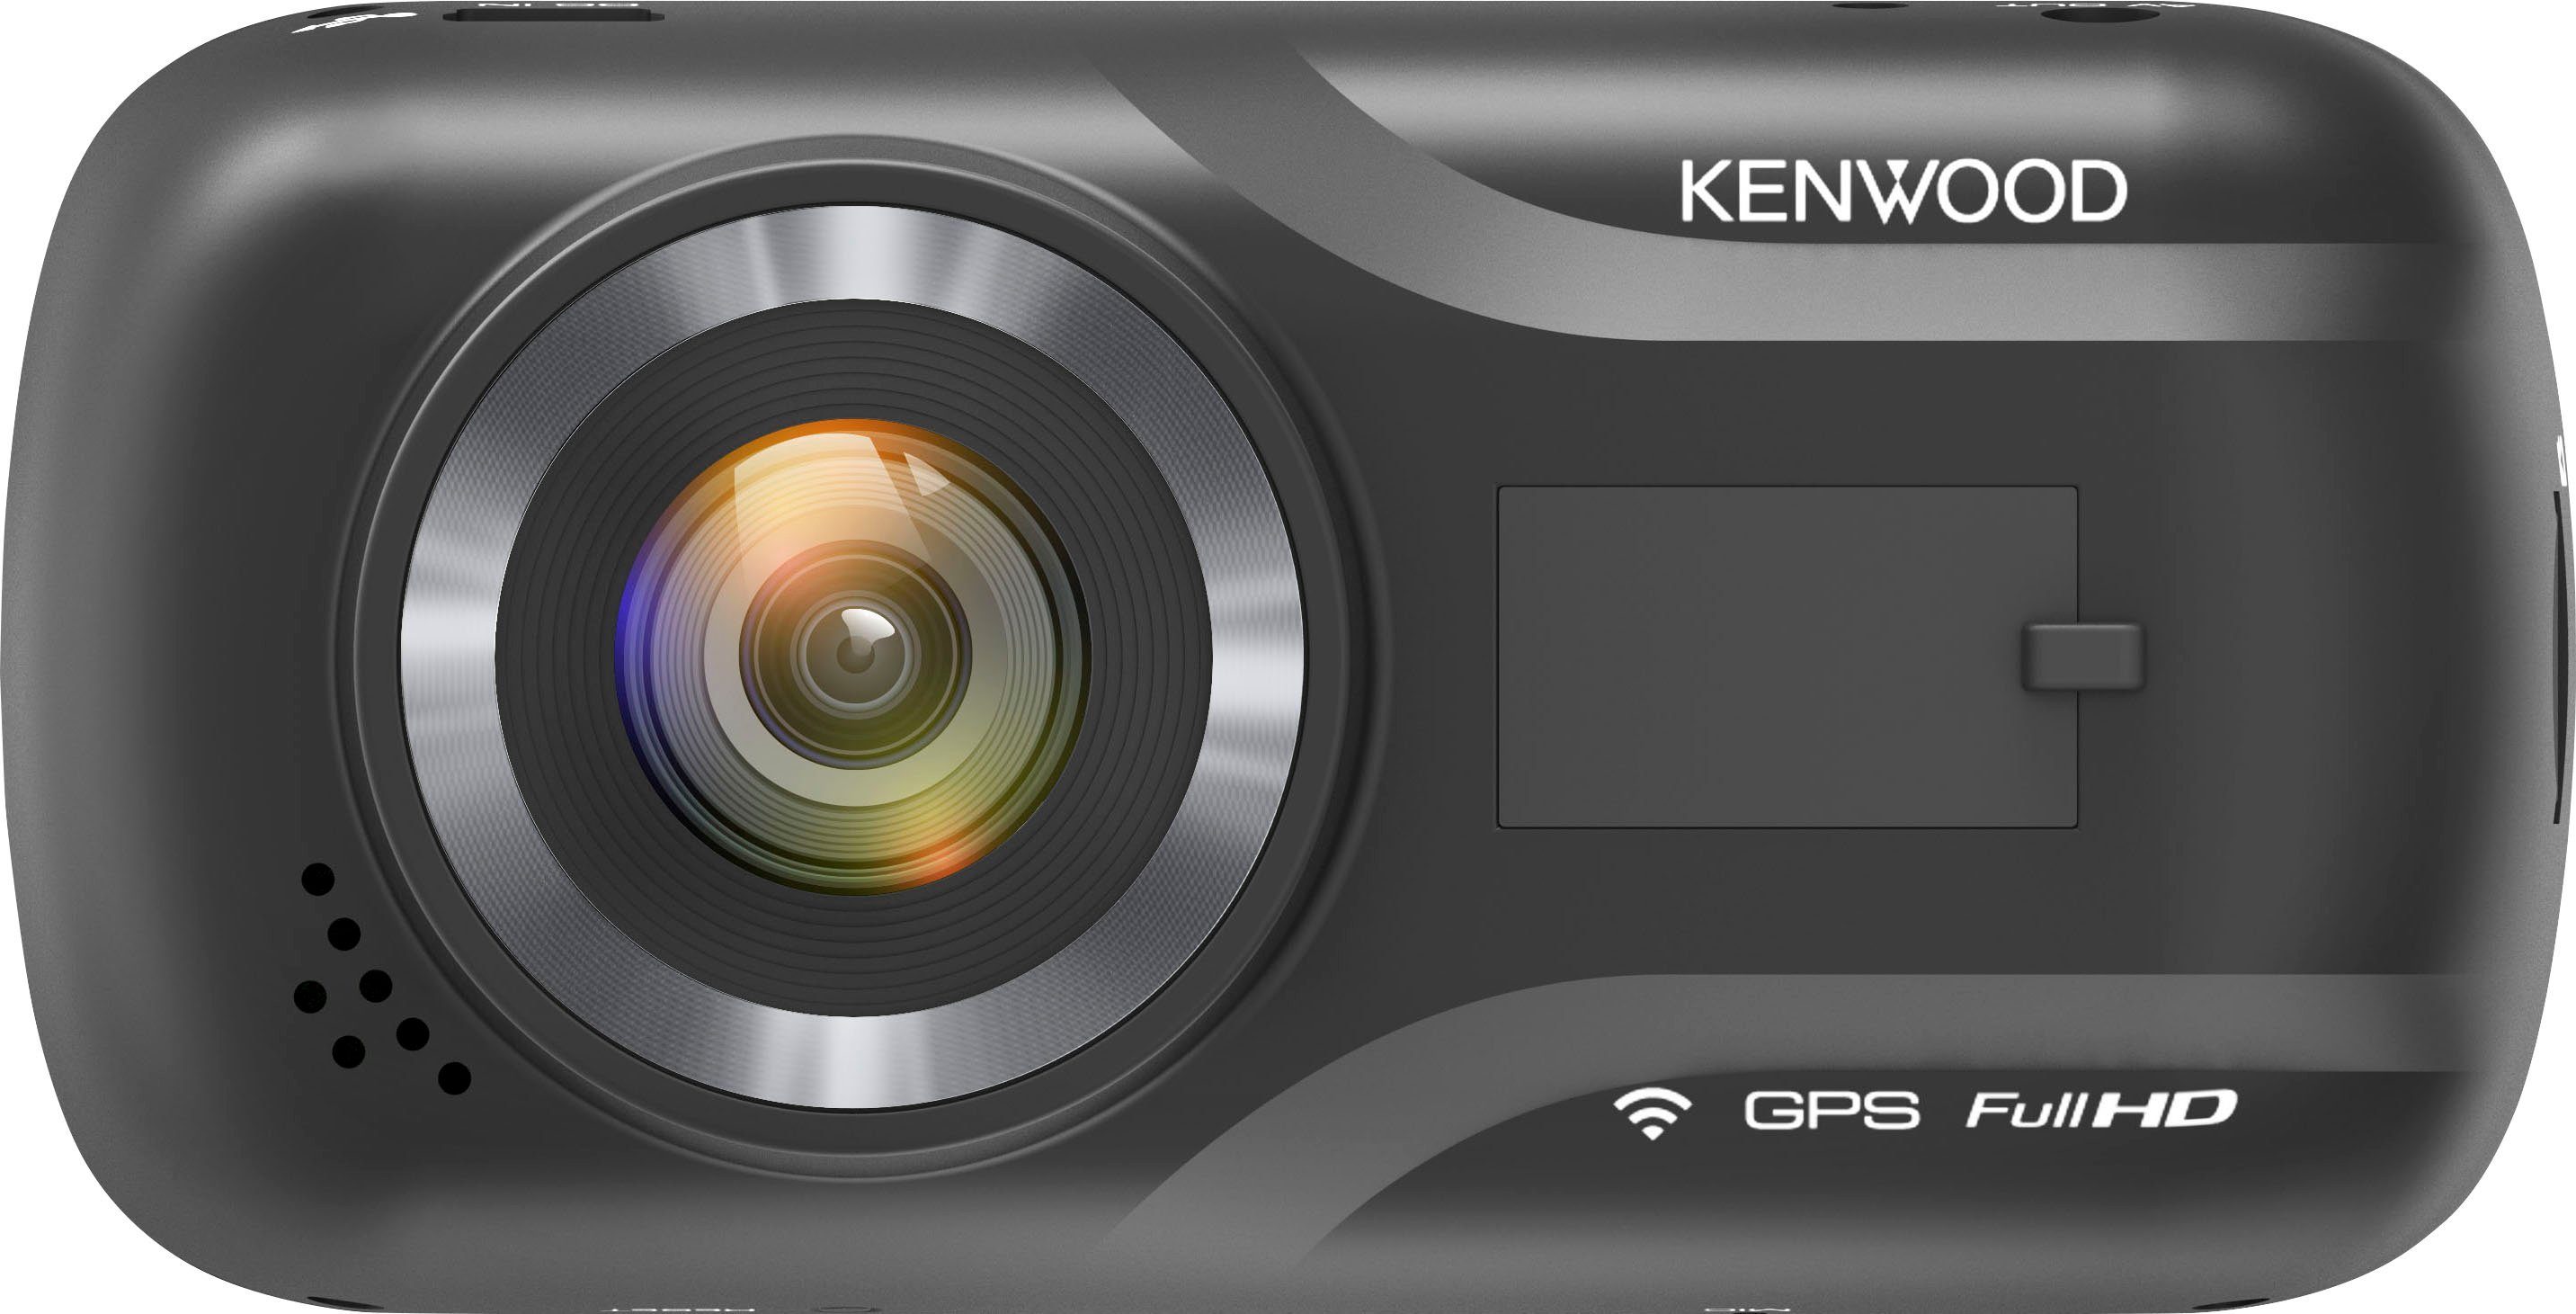 (Full Dashcam (Wi-Fi) Kenwood HD, WLAN DRV-A301W